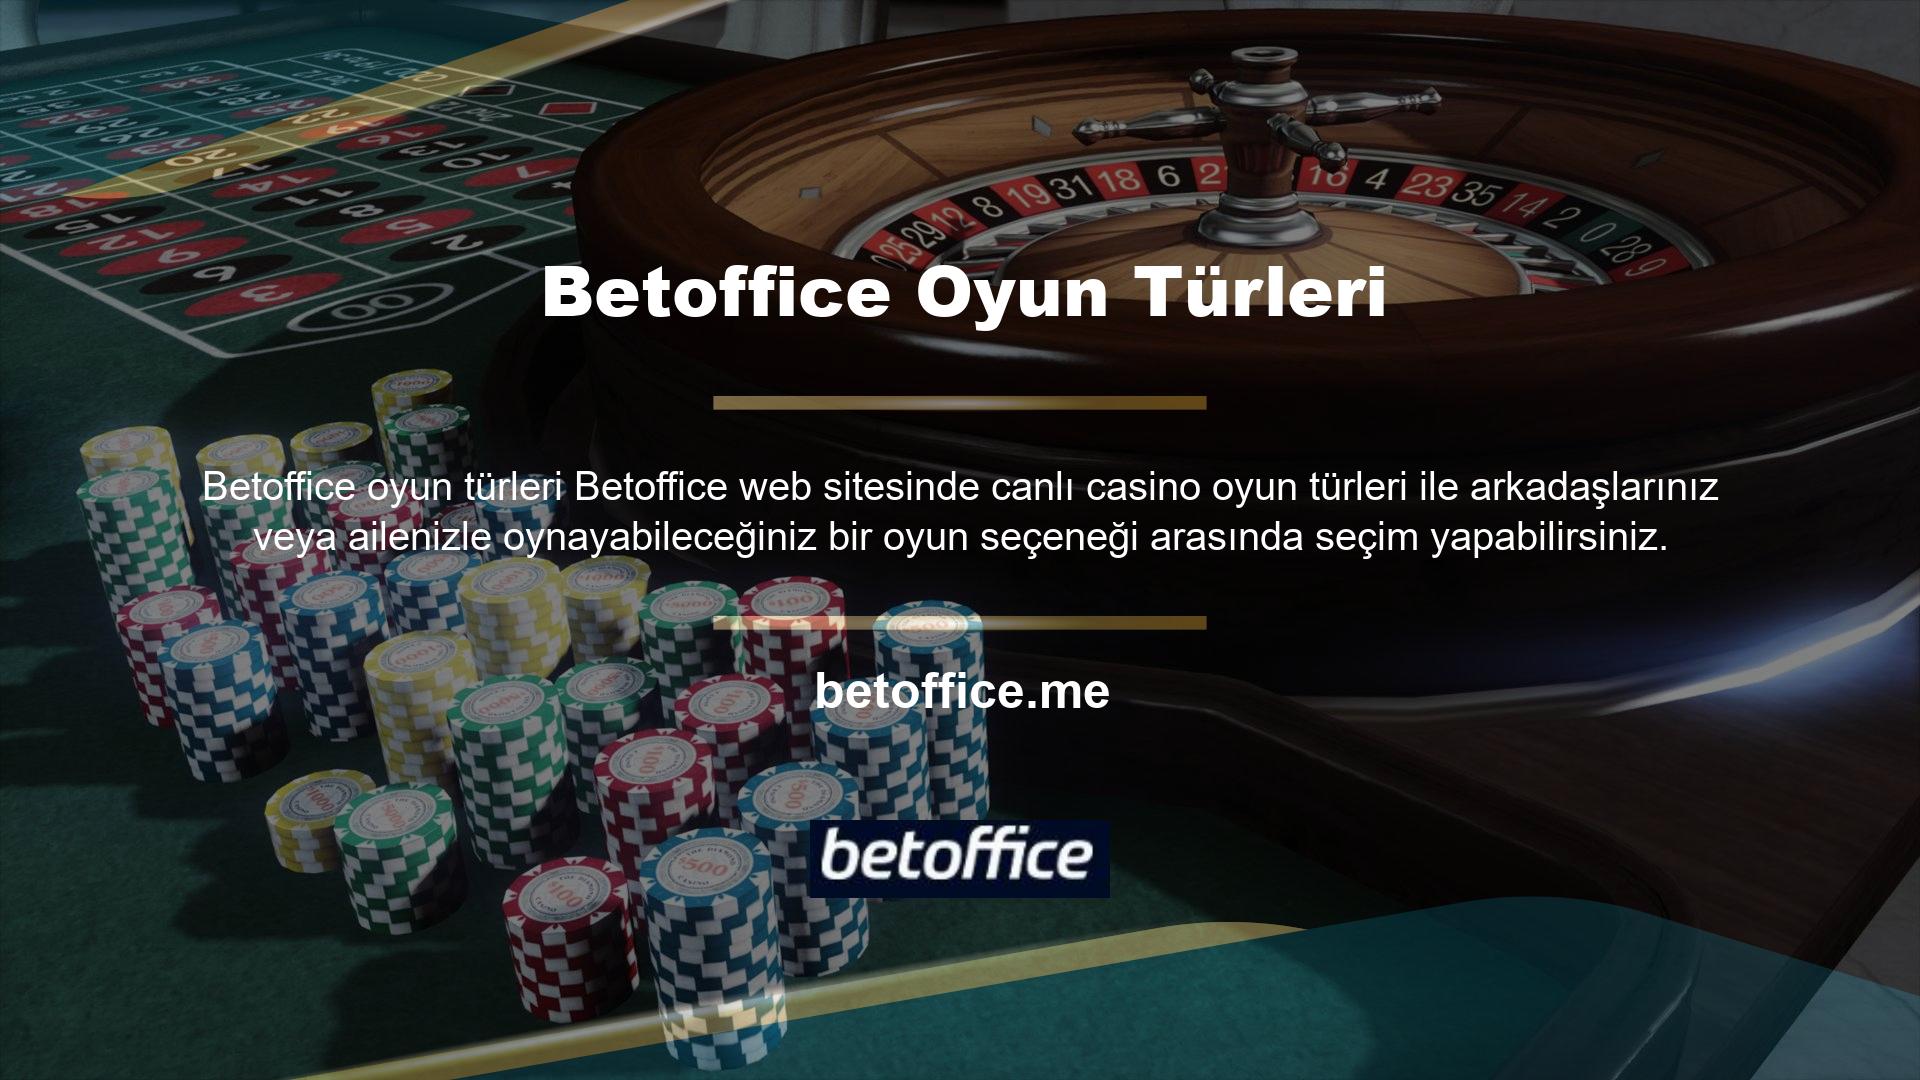 Türk casino mevzuatı gereği, Türkiye'de böyle bir yasa bulunmadığından, para karşılığında gerçek casino oyunlarını oynama şansı yoktur